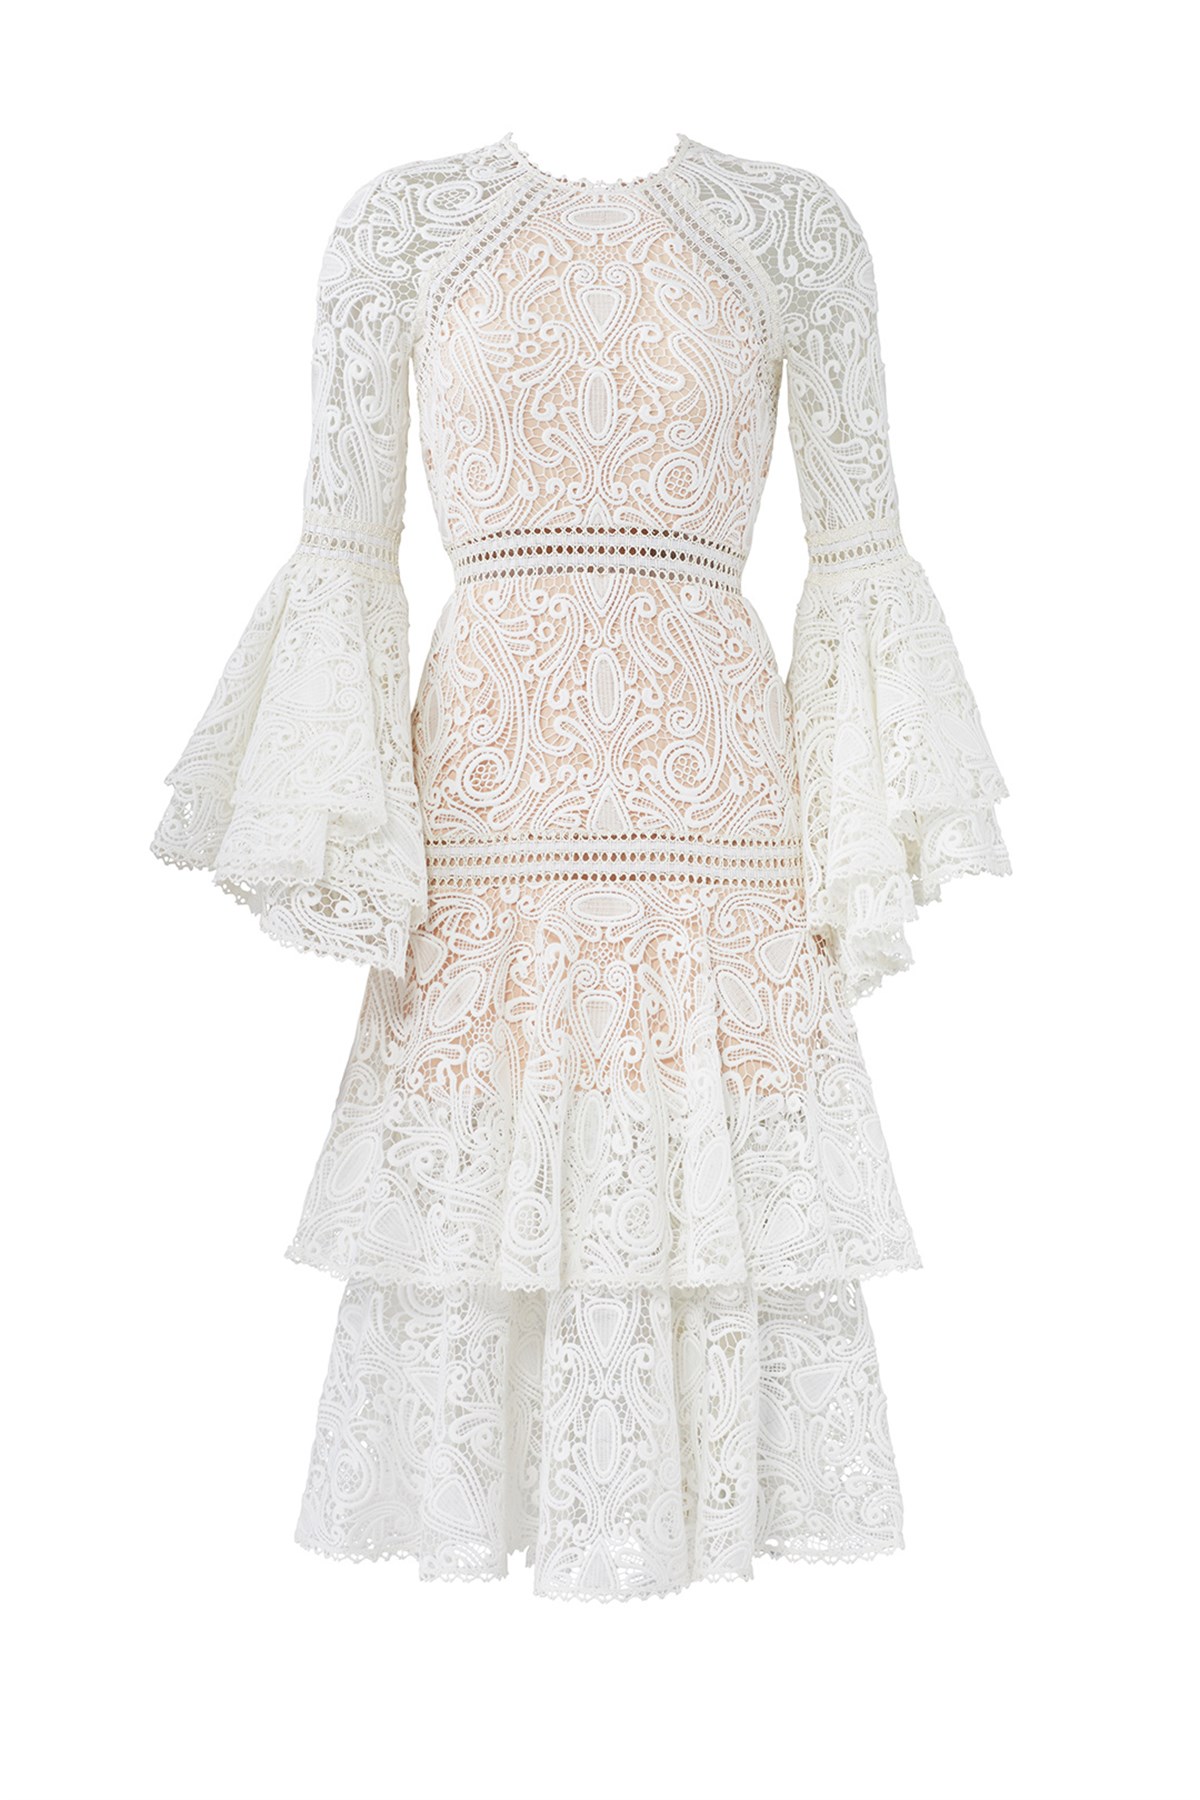 Beyaz Dantel Tasarım Elbise - Deep Atelier